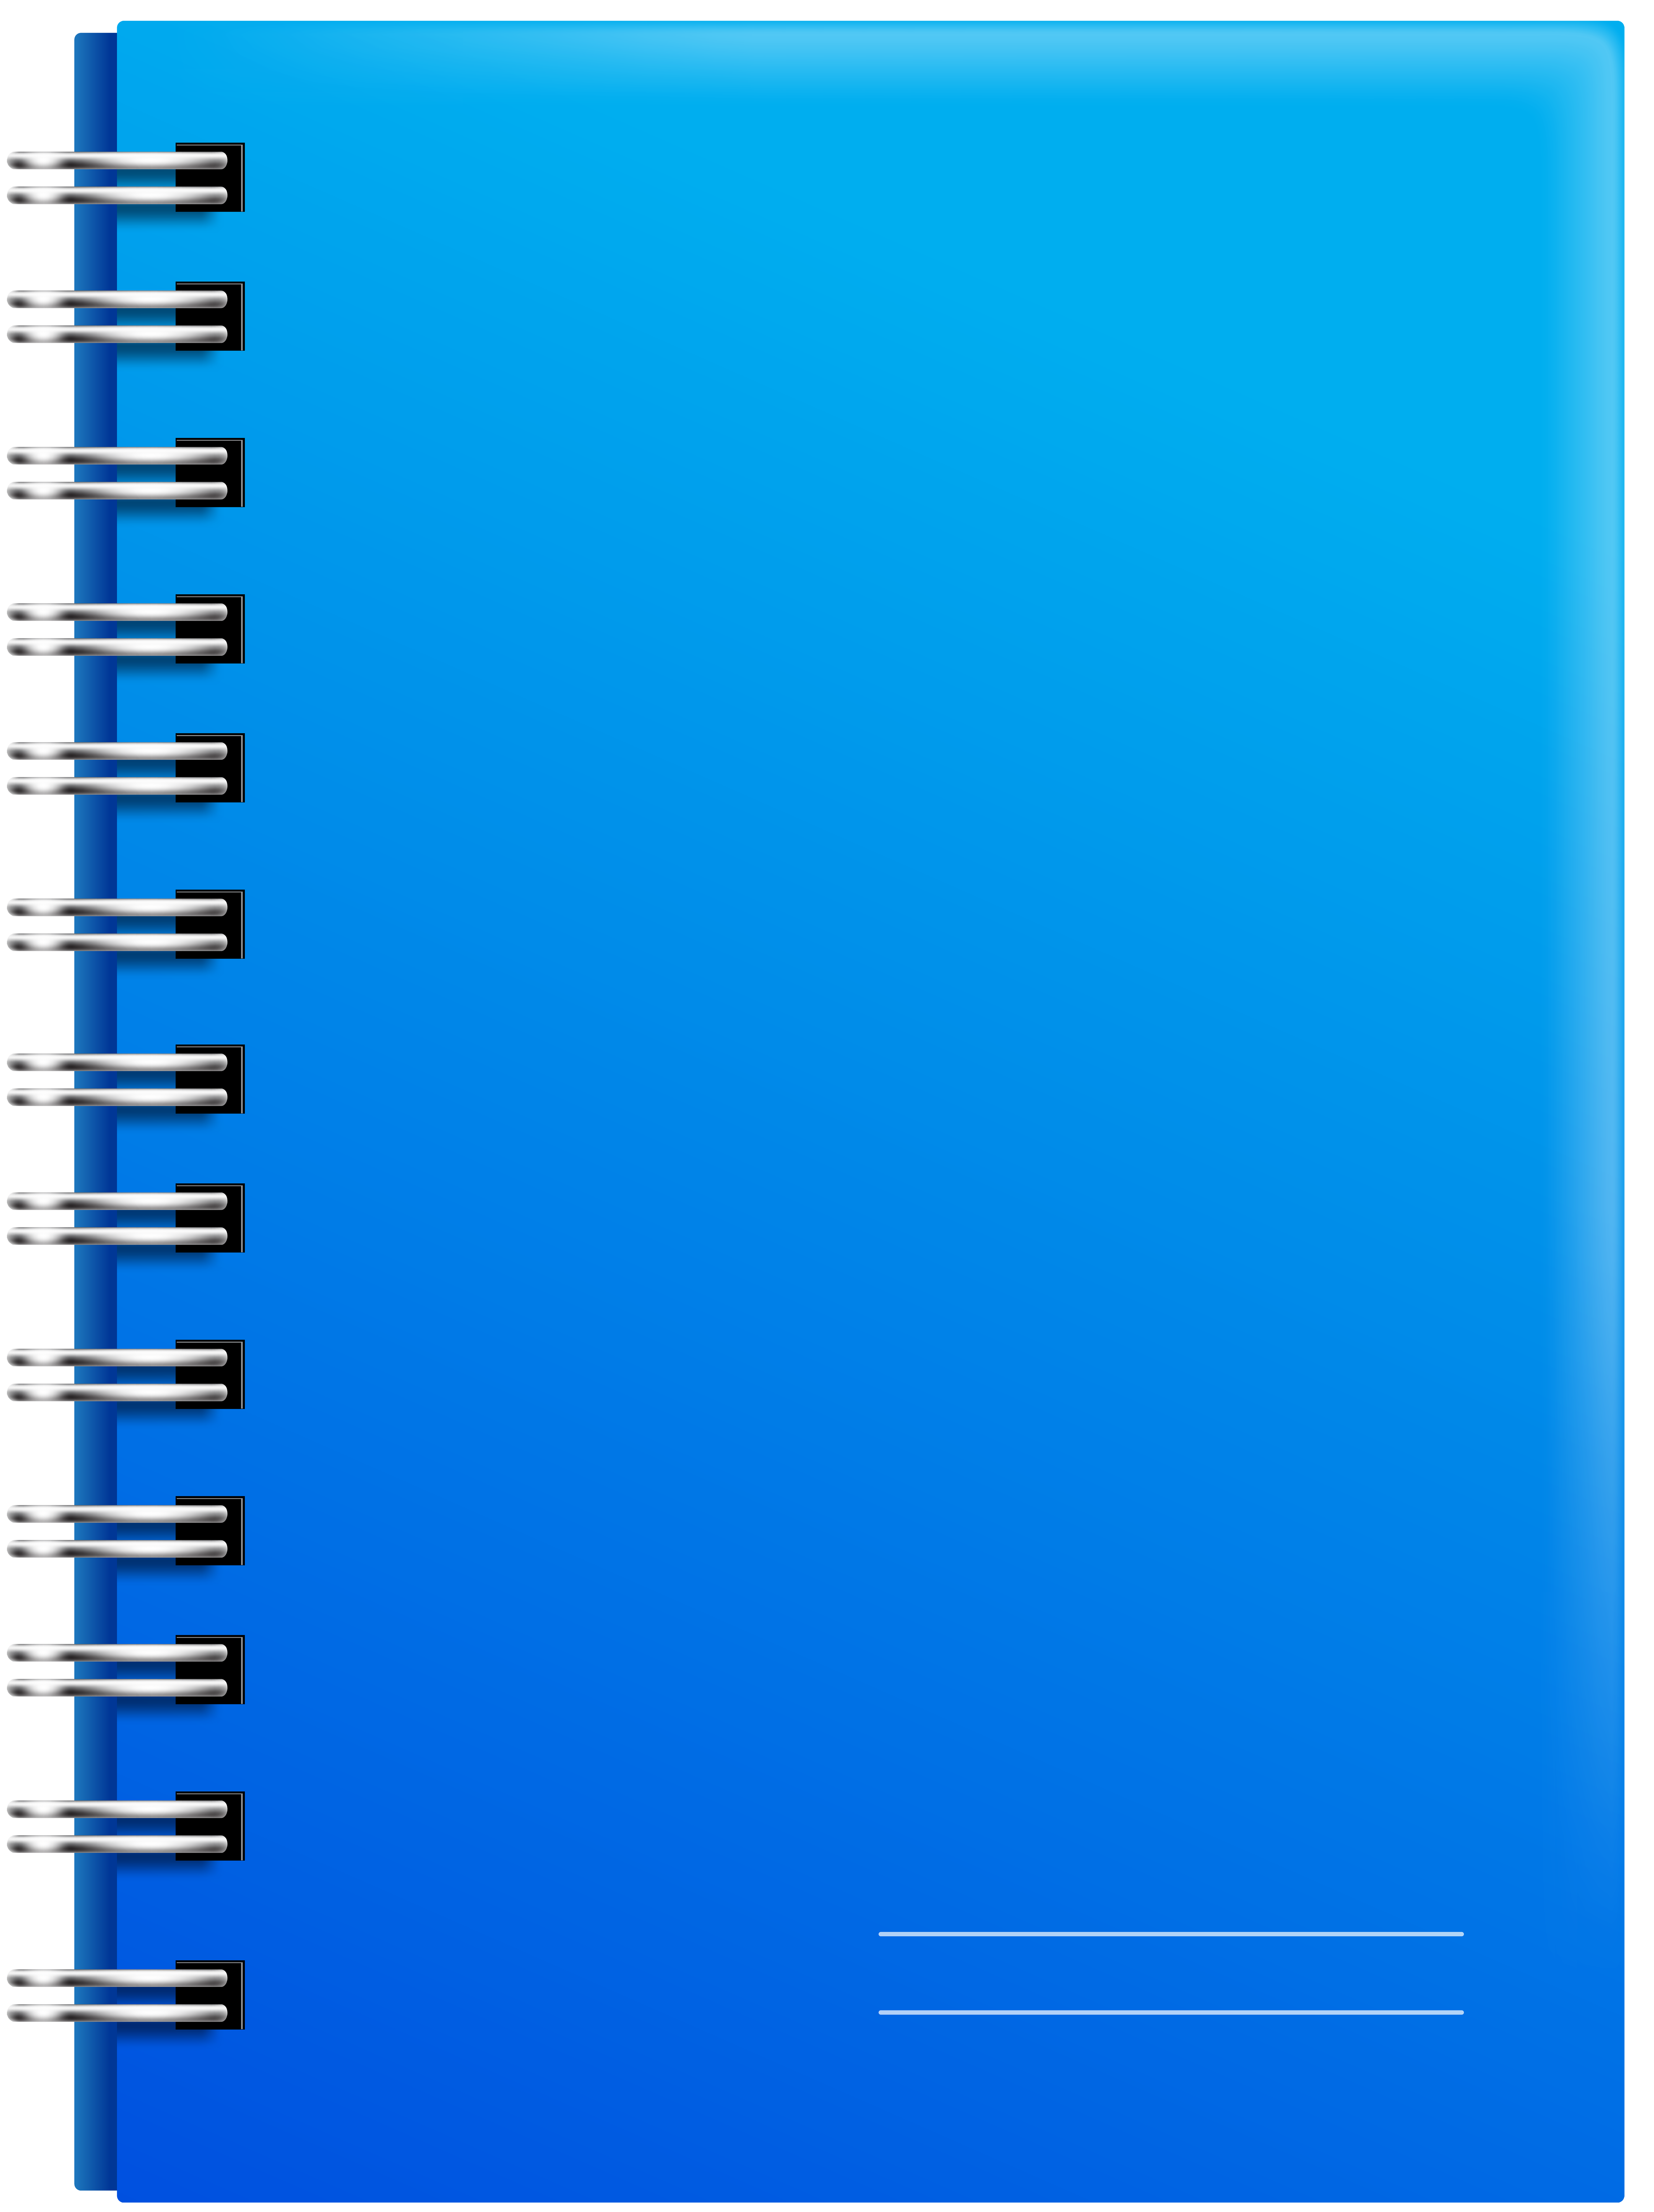 Spiral notebook blue.